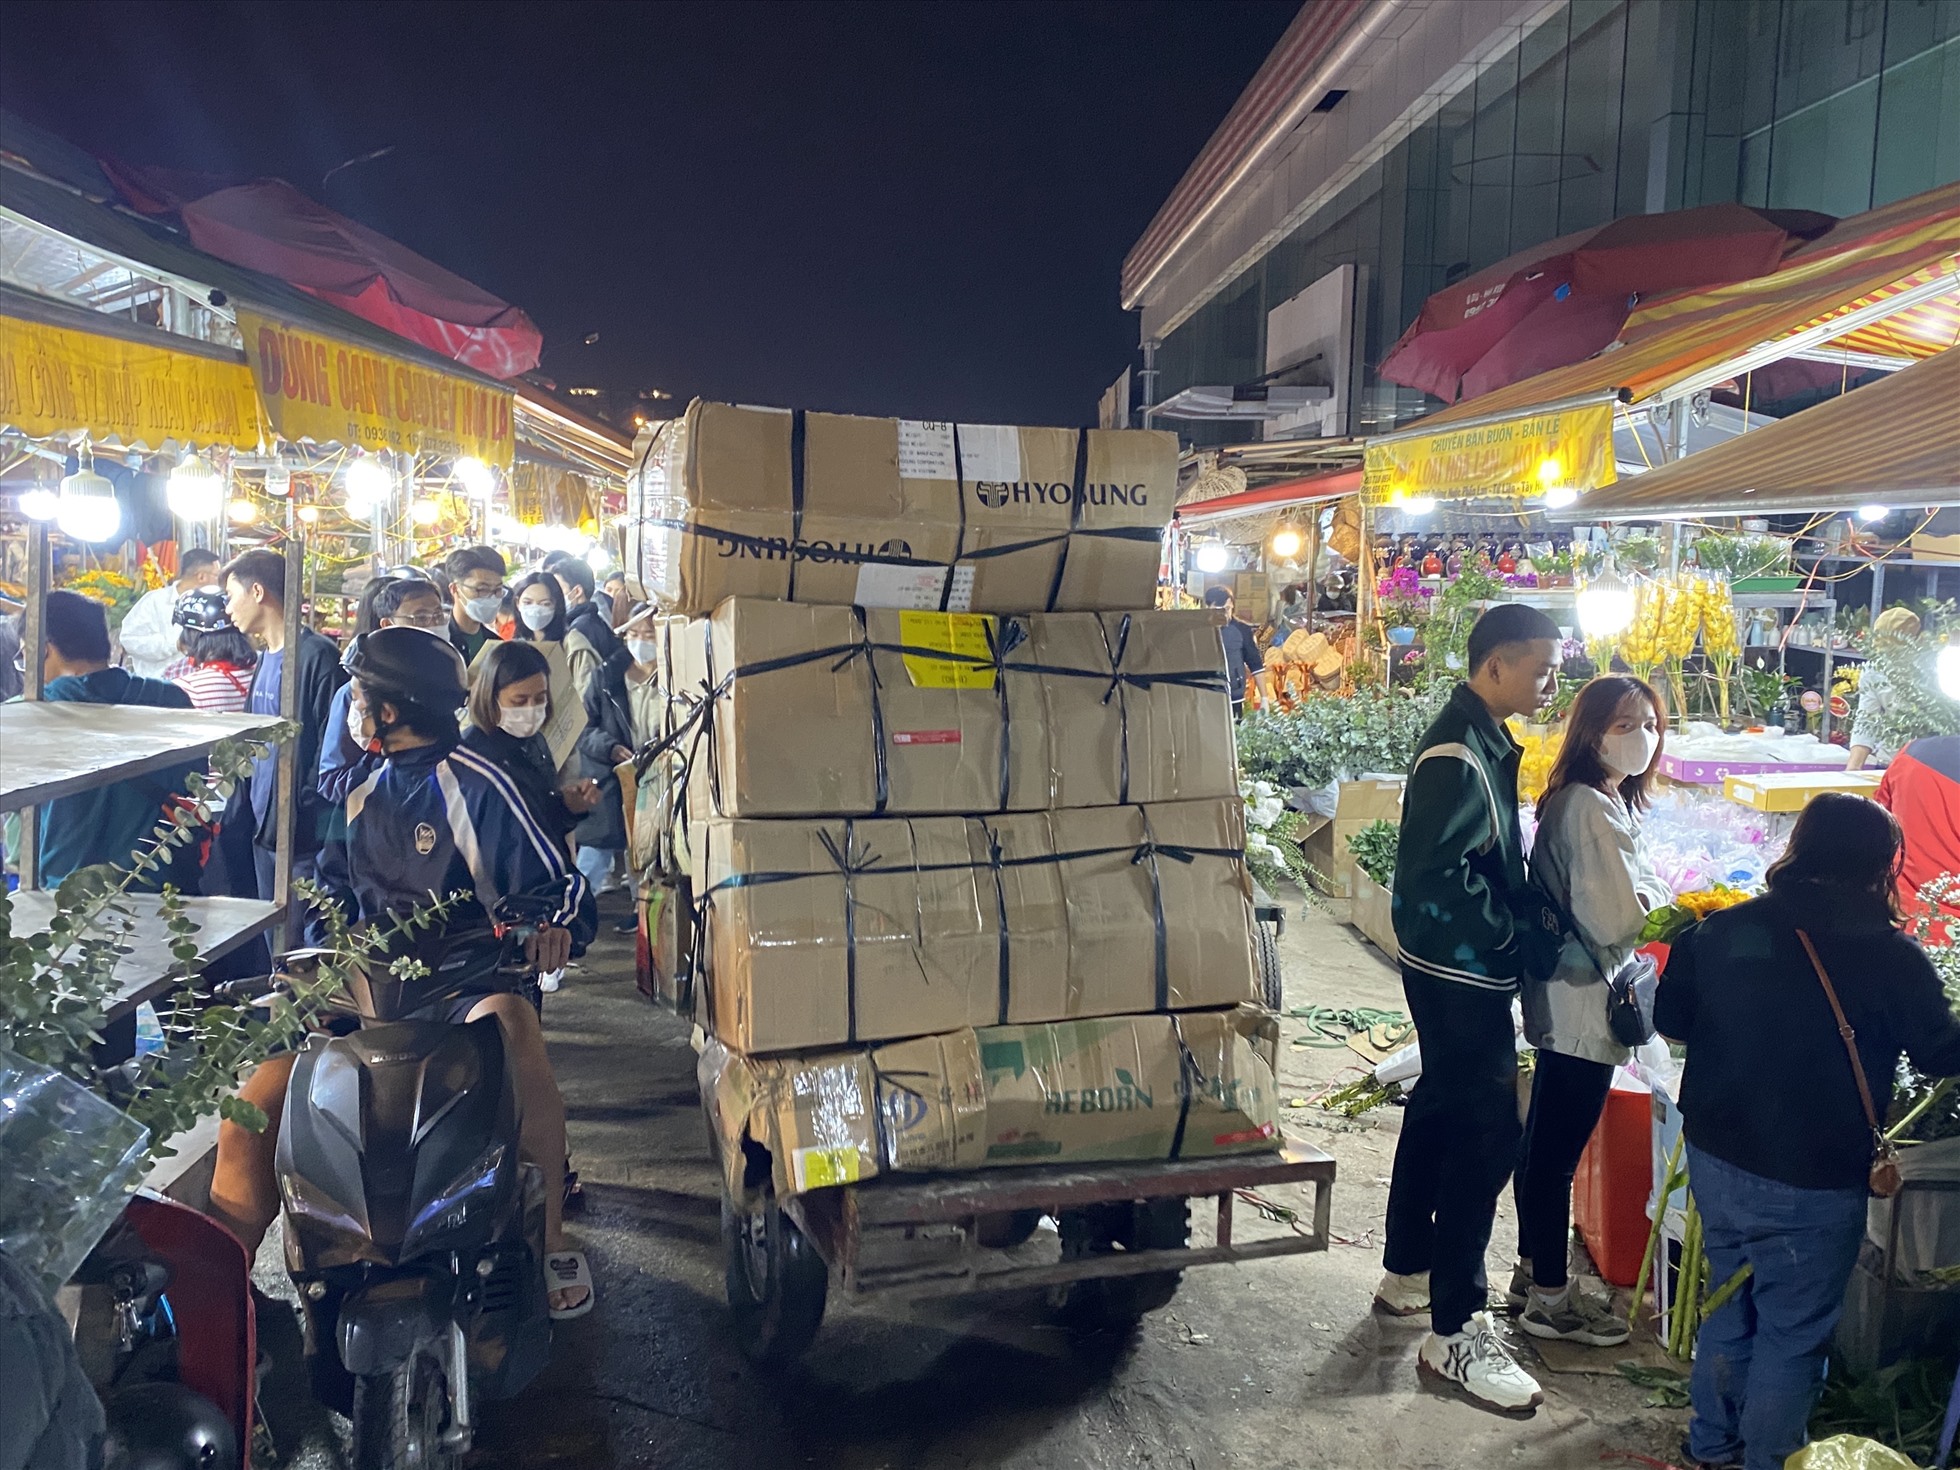 Không khó để bắt gặp các thùng xe trở hoa liên tục ra vào khu vực chợ bởi các tiểu thương nhập hoa số lượng lớn từ cả trong và ngoại tỉnh như Mê Linh, Tây Tựu hay Đà Lạt, Sa Pa,...